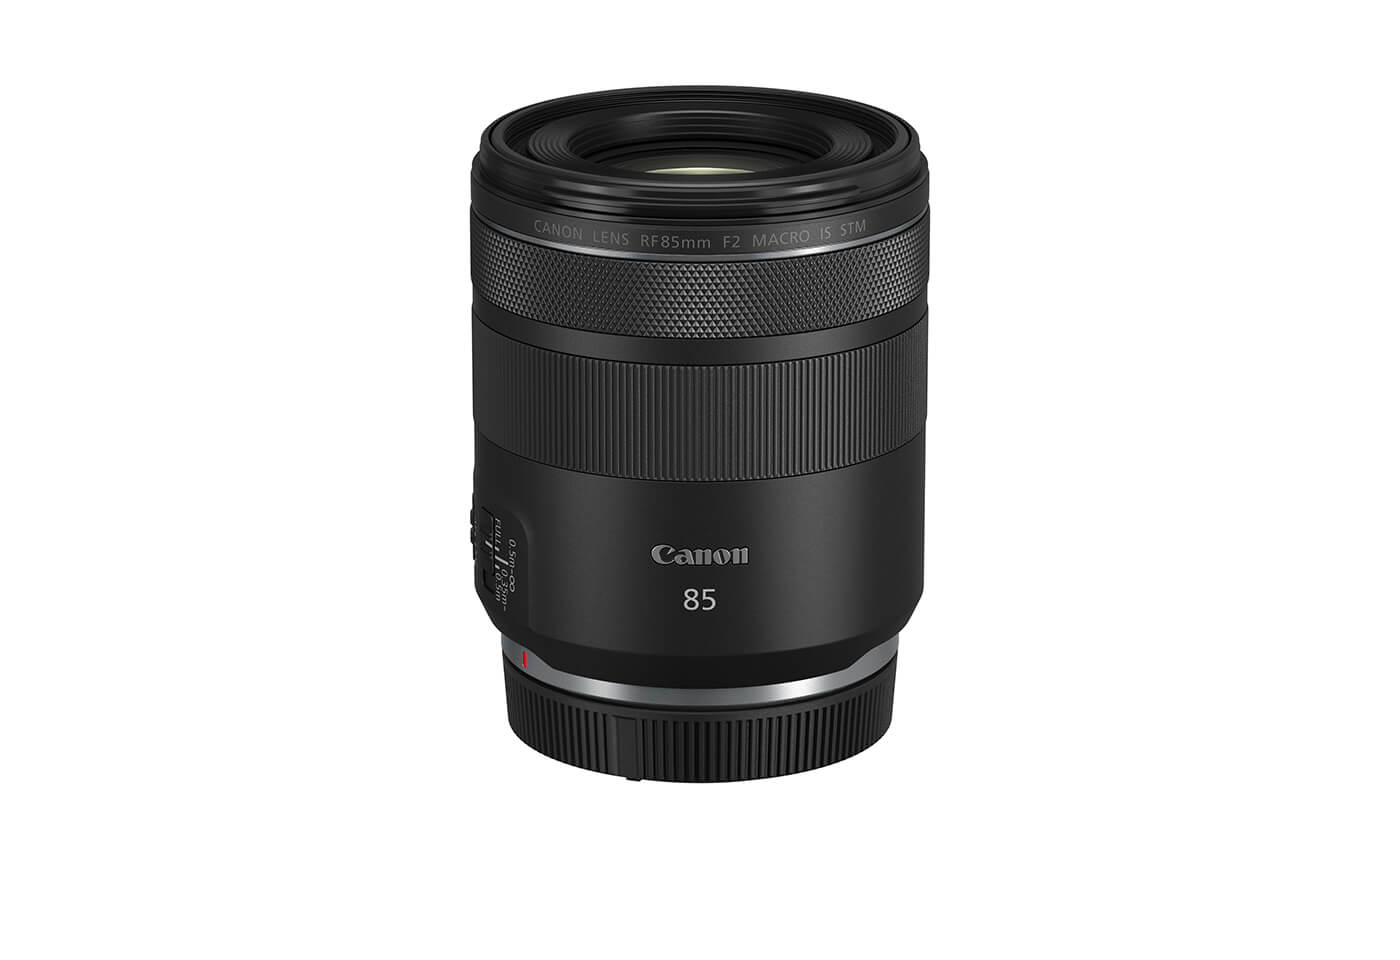 Profile image of RF 85mm f/2 Macro IS STM macro lens vertical side